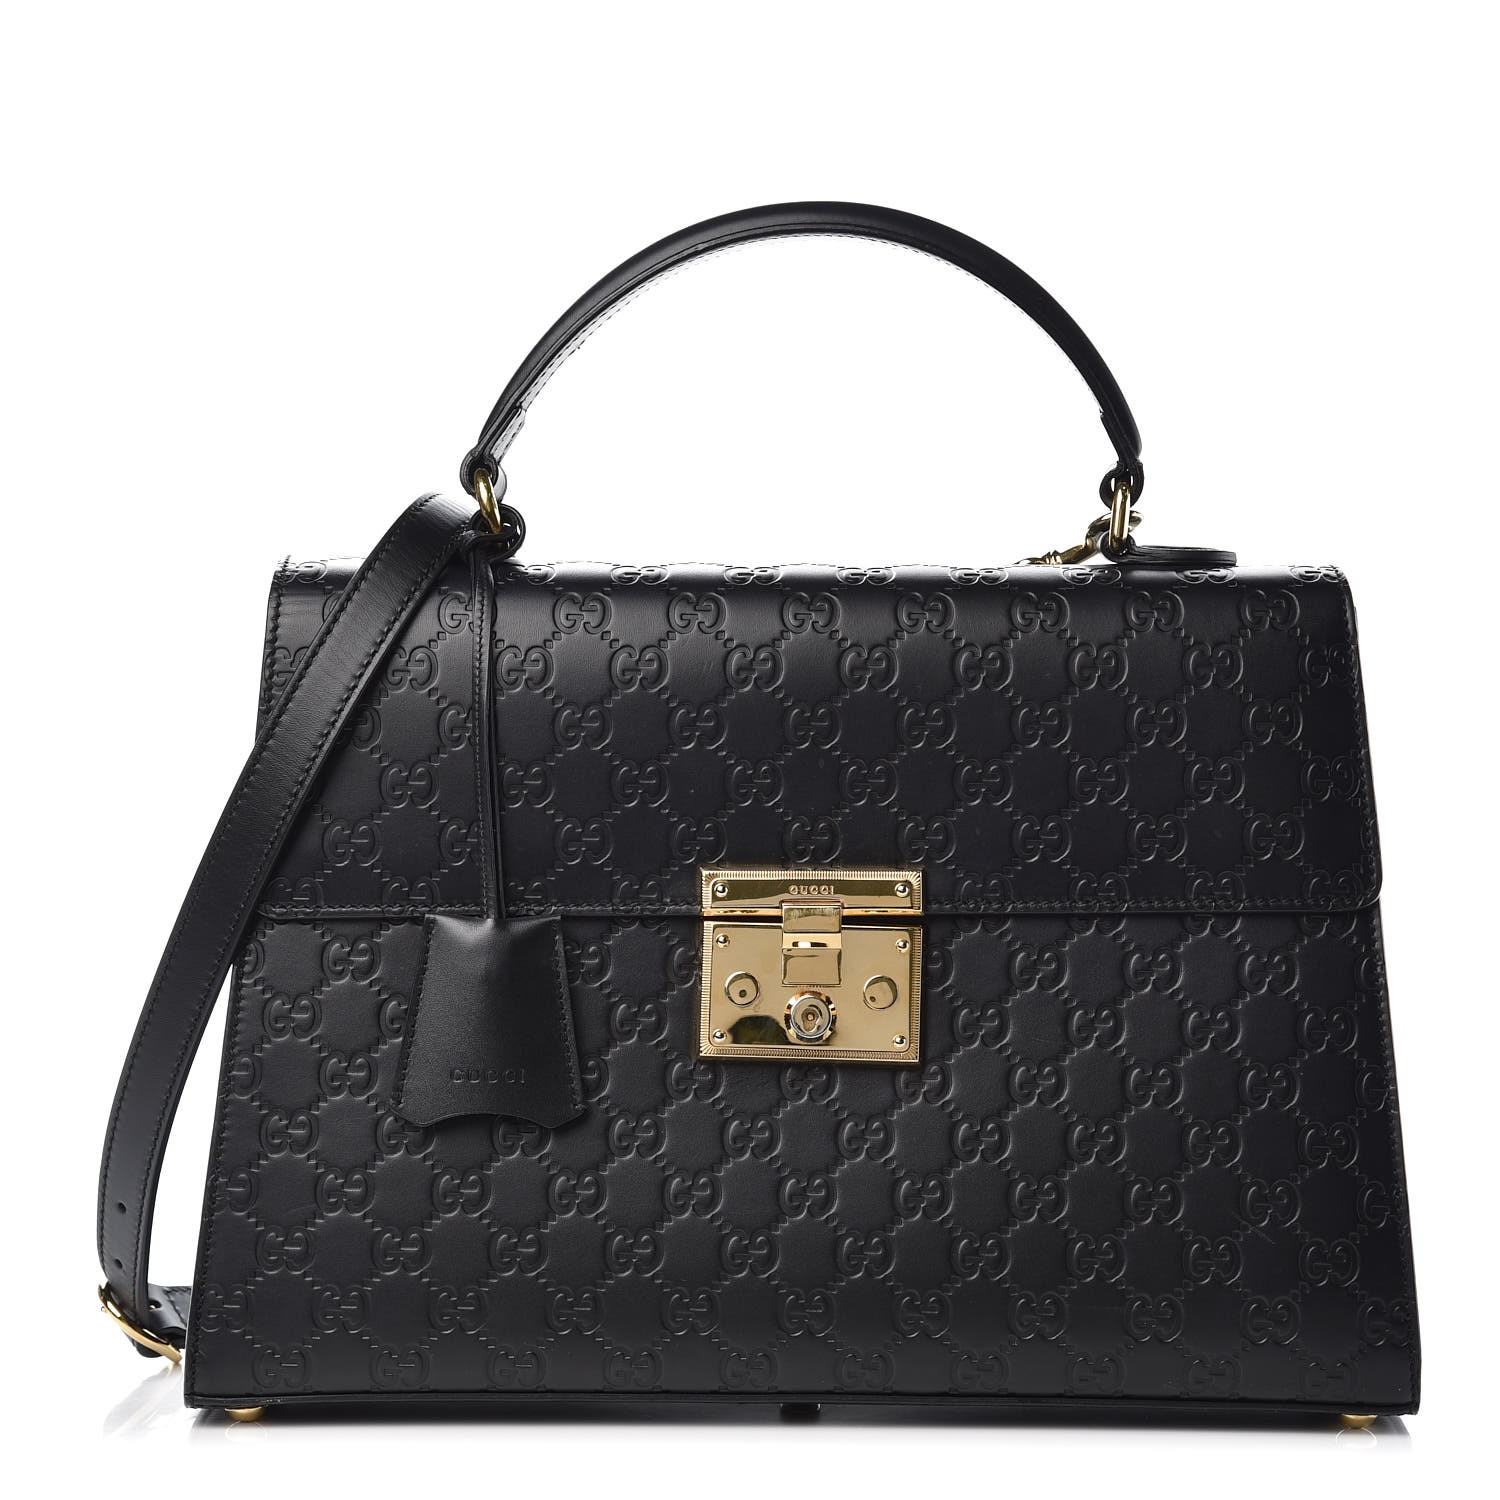 GUCCI Guccissima Medium Padlock Signature Top Handle Bag Black 347434